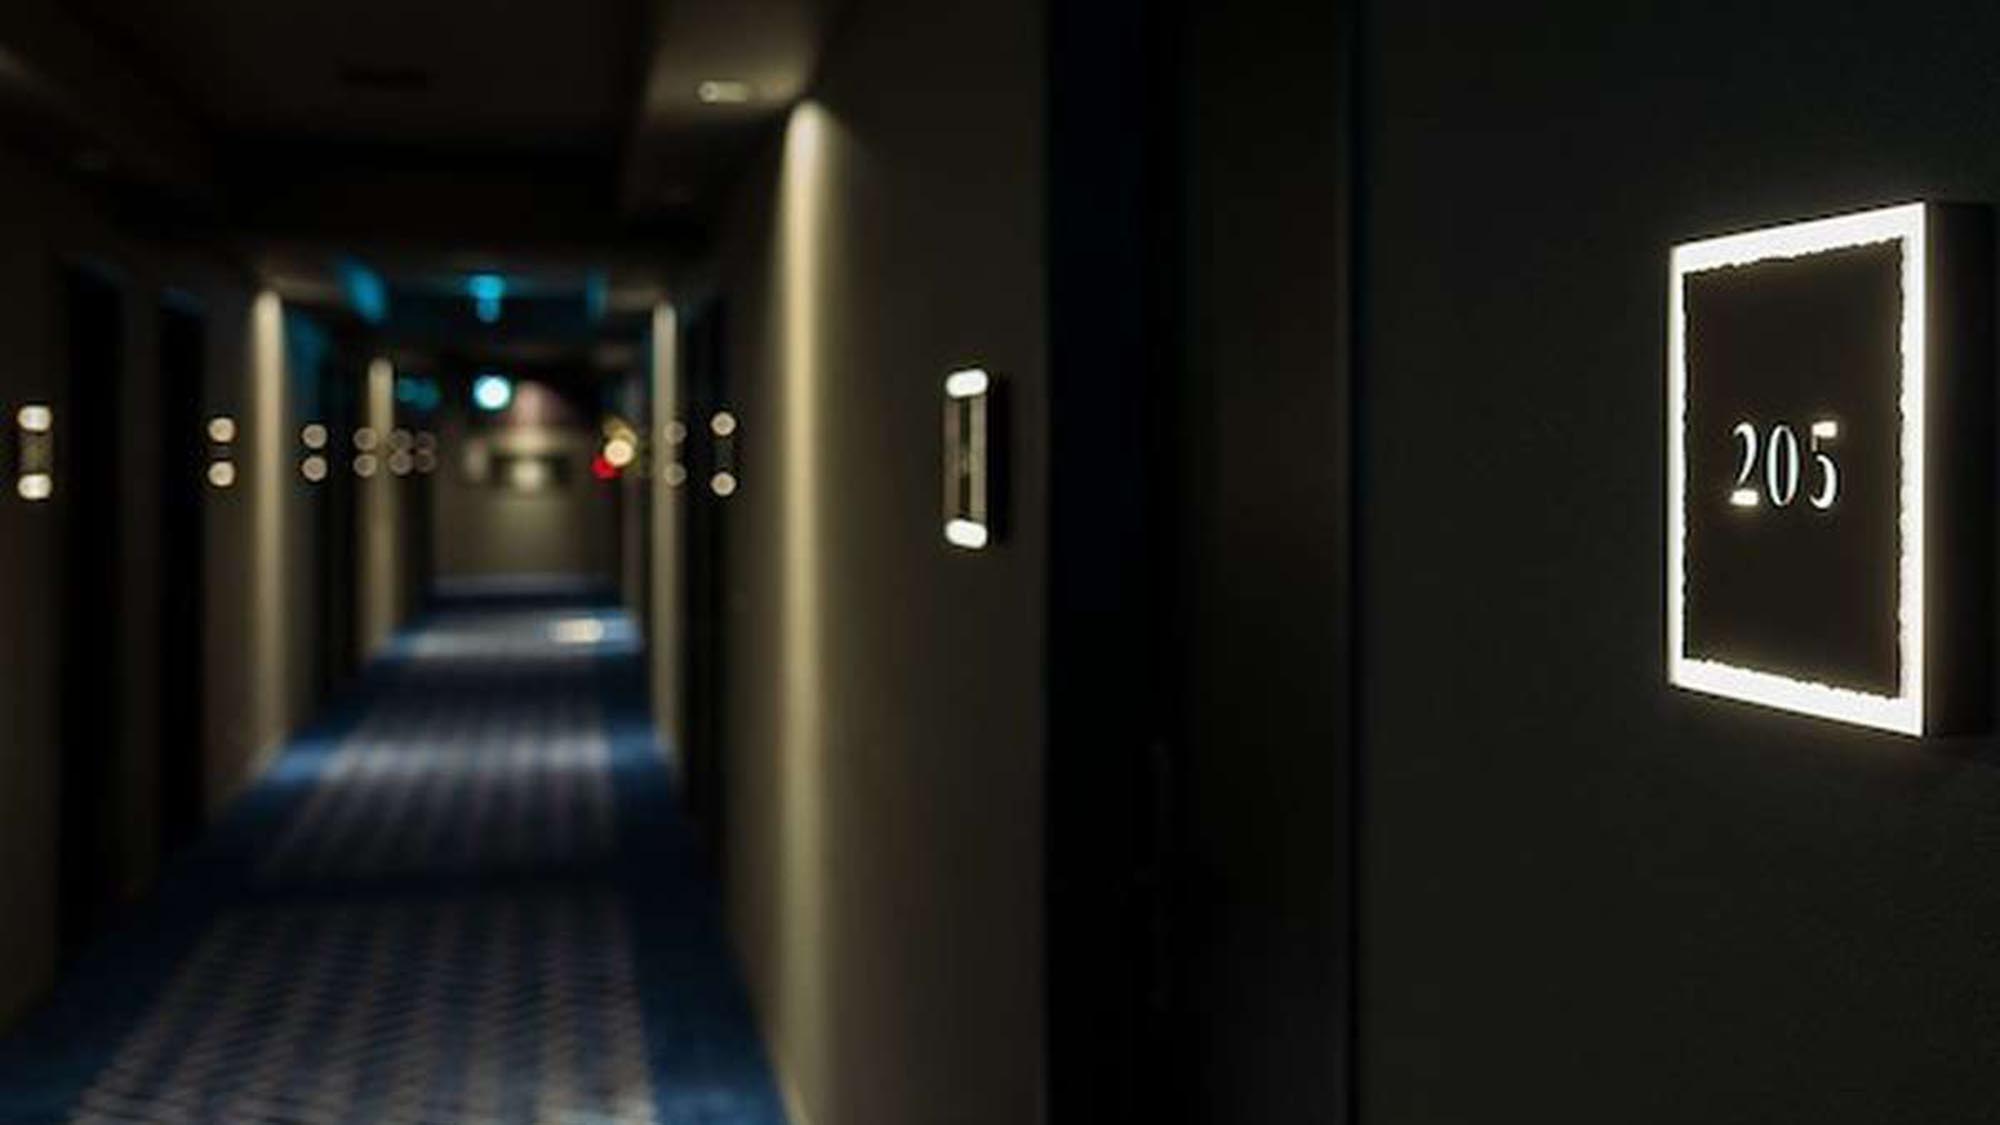 【客室廊下】客室まで続く廊下も、心落ち着く空間を演出。